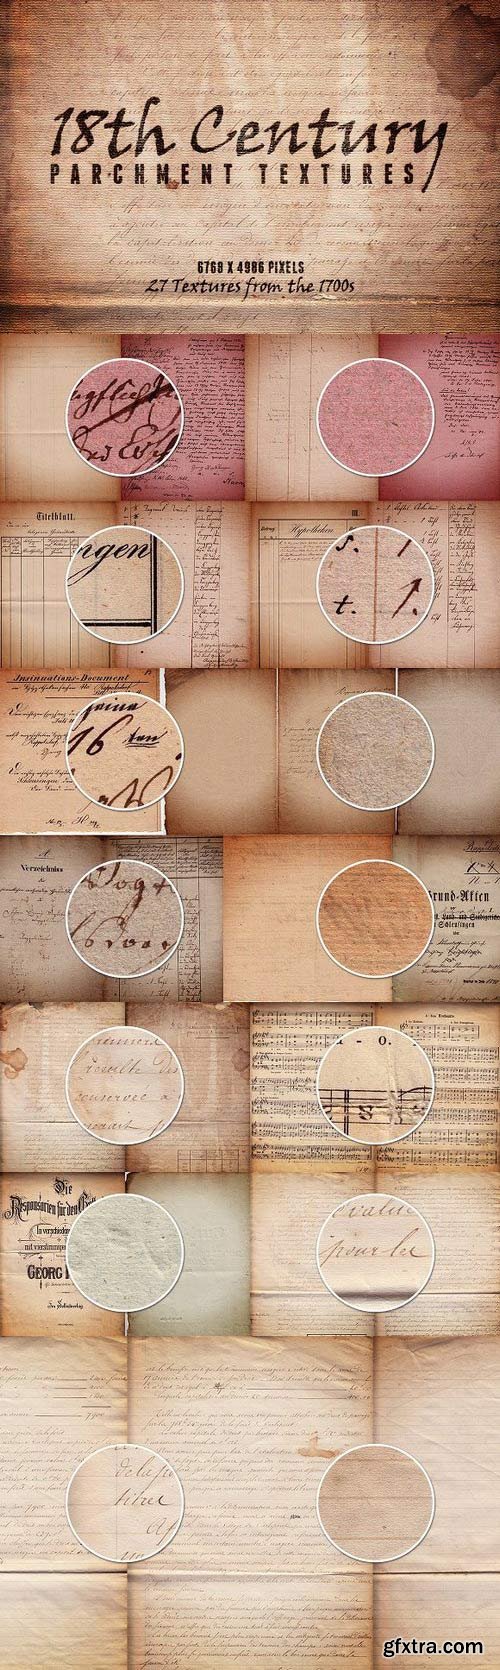 CM - 18th Century Parchment Textures 1 90741